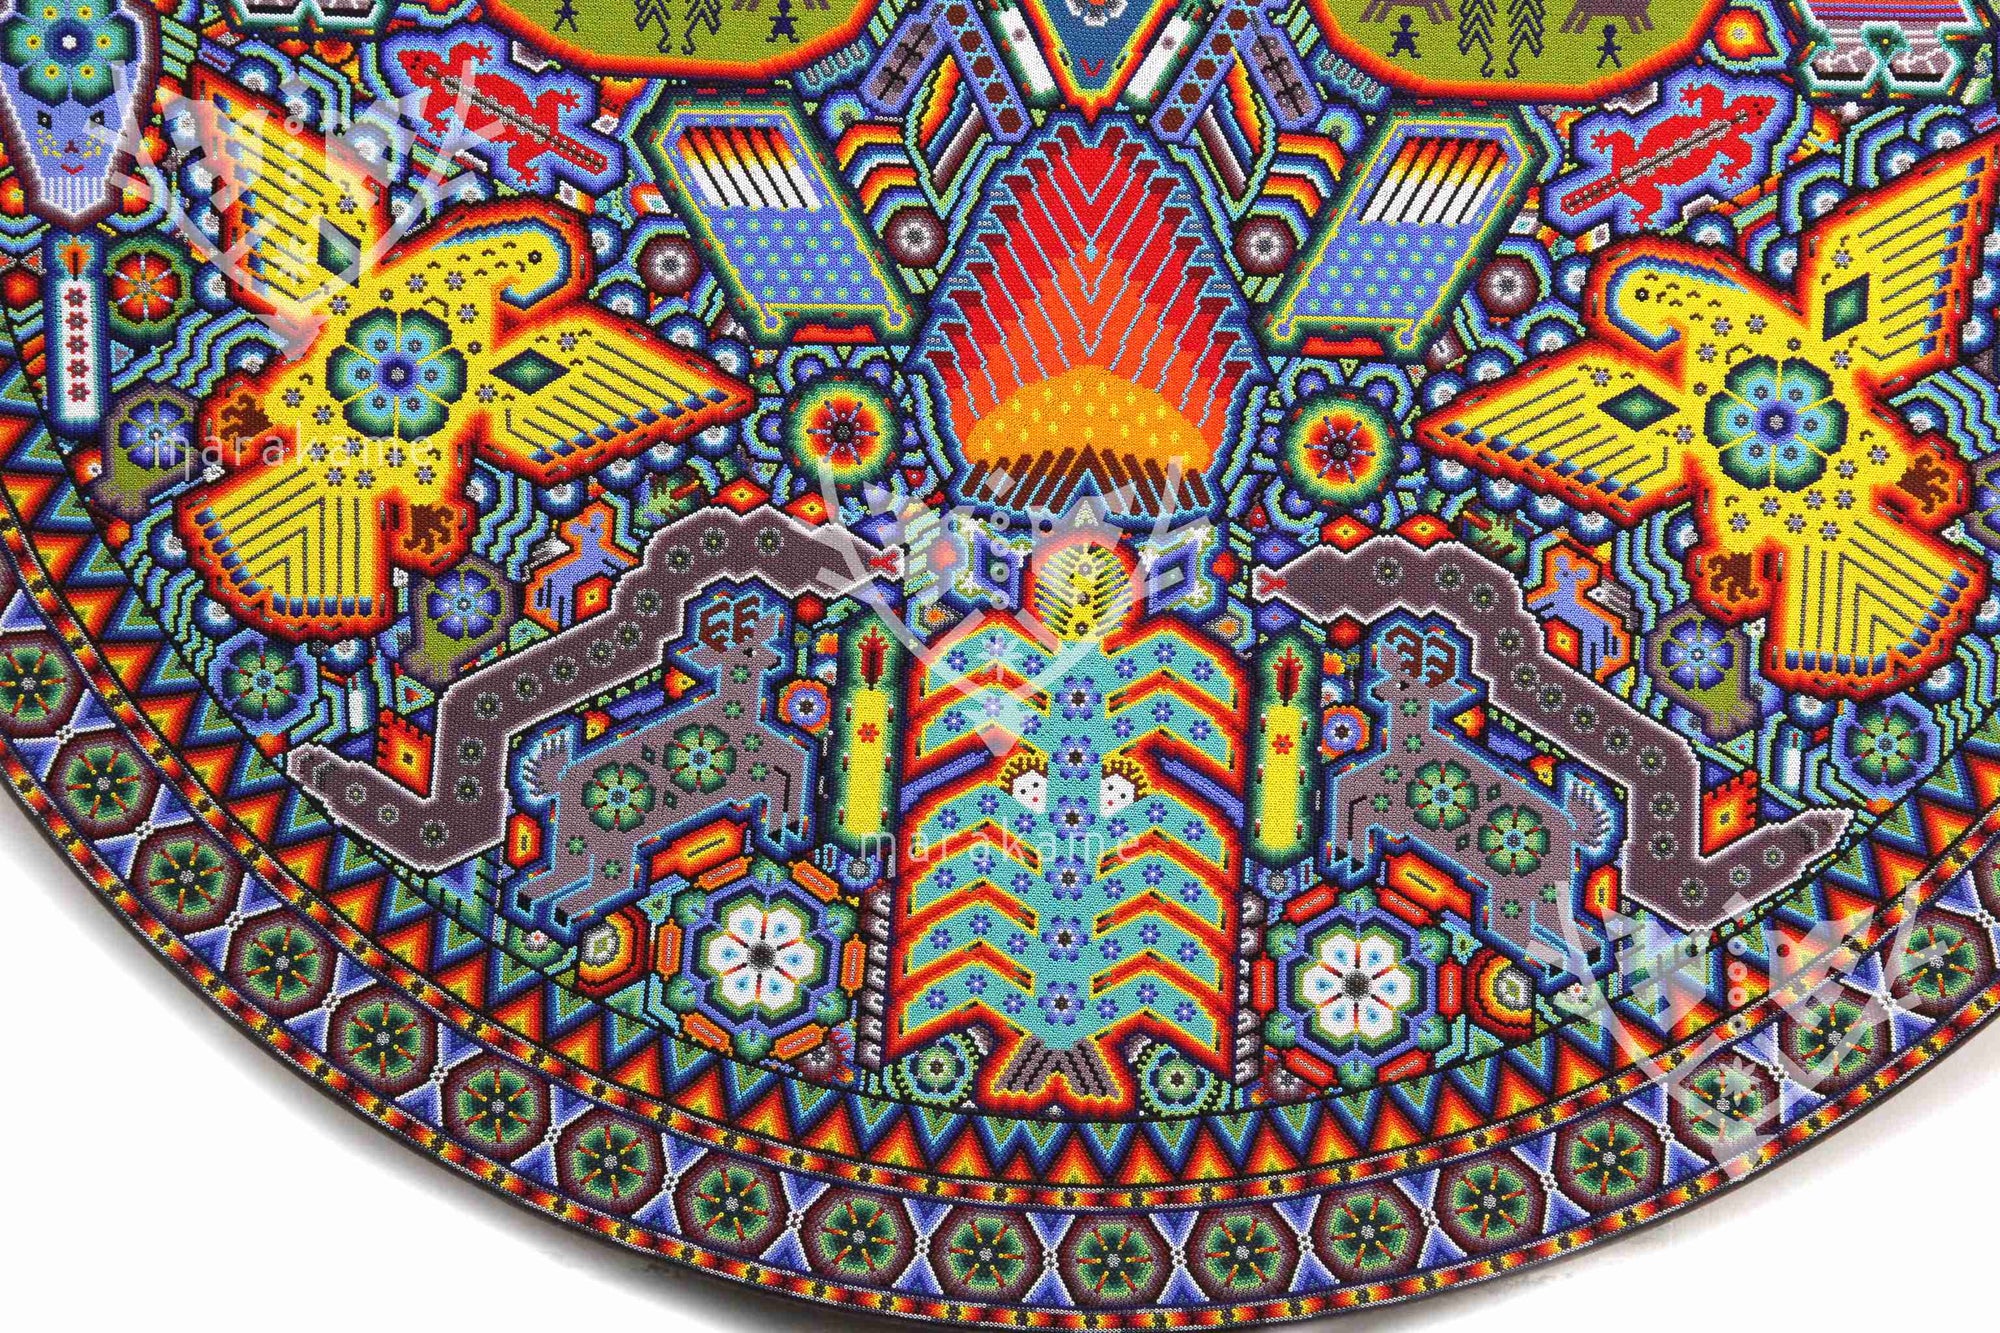 Nierika de Chaquira Circle Huichol - Mawaxira - 120 cm. First prize in the Huichol art biennial.